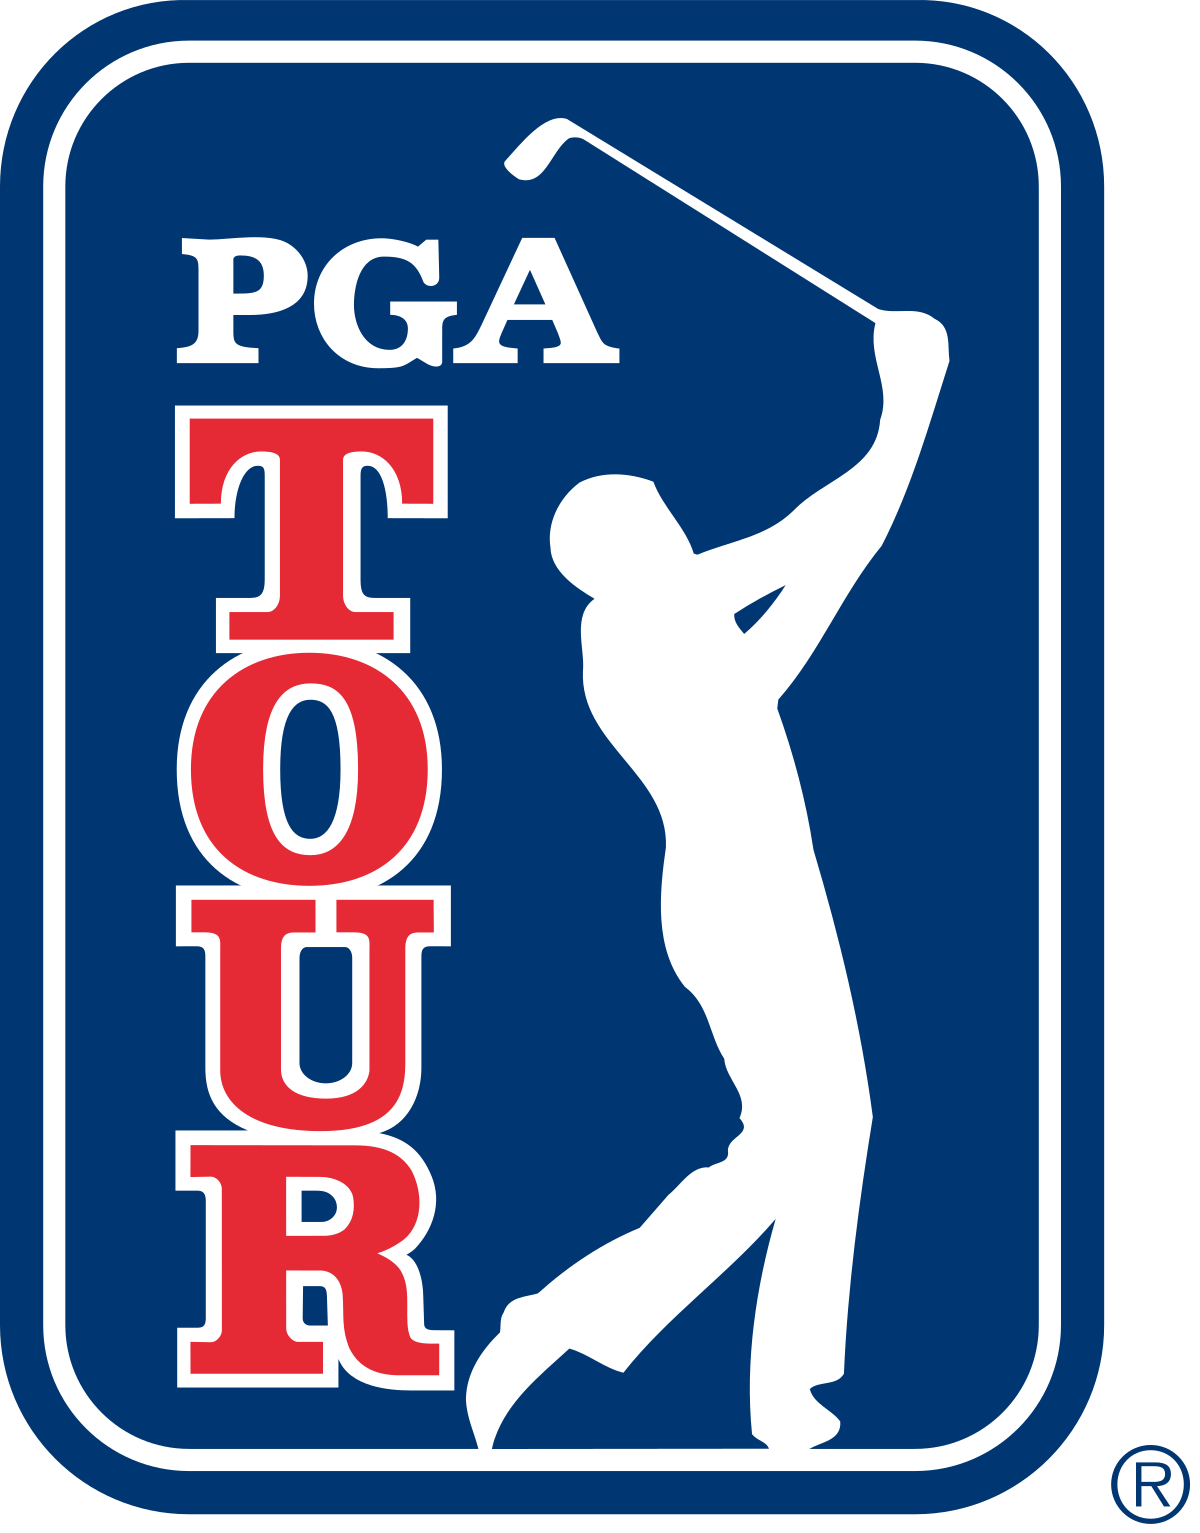 PGA_Tour_logo.svg.png